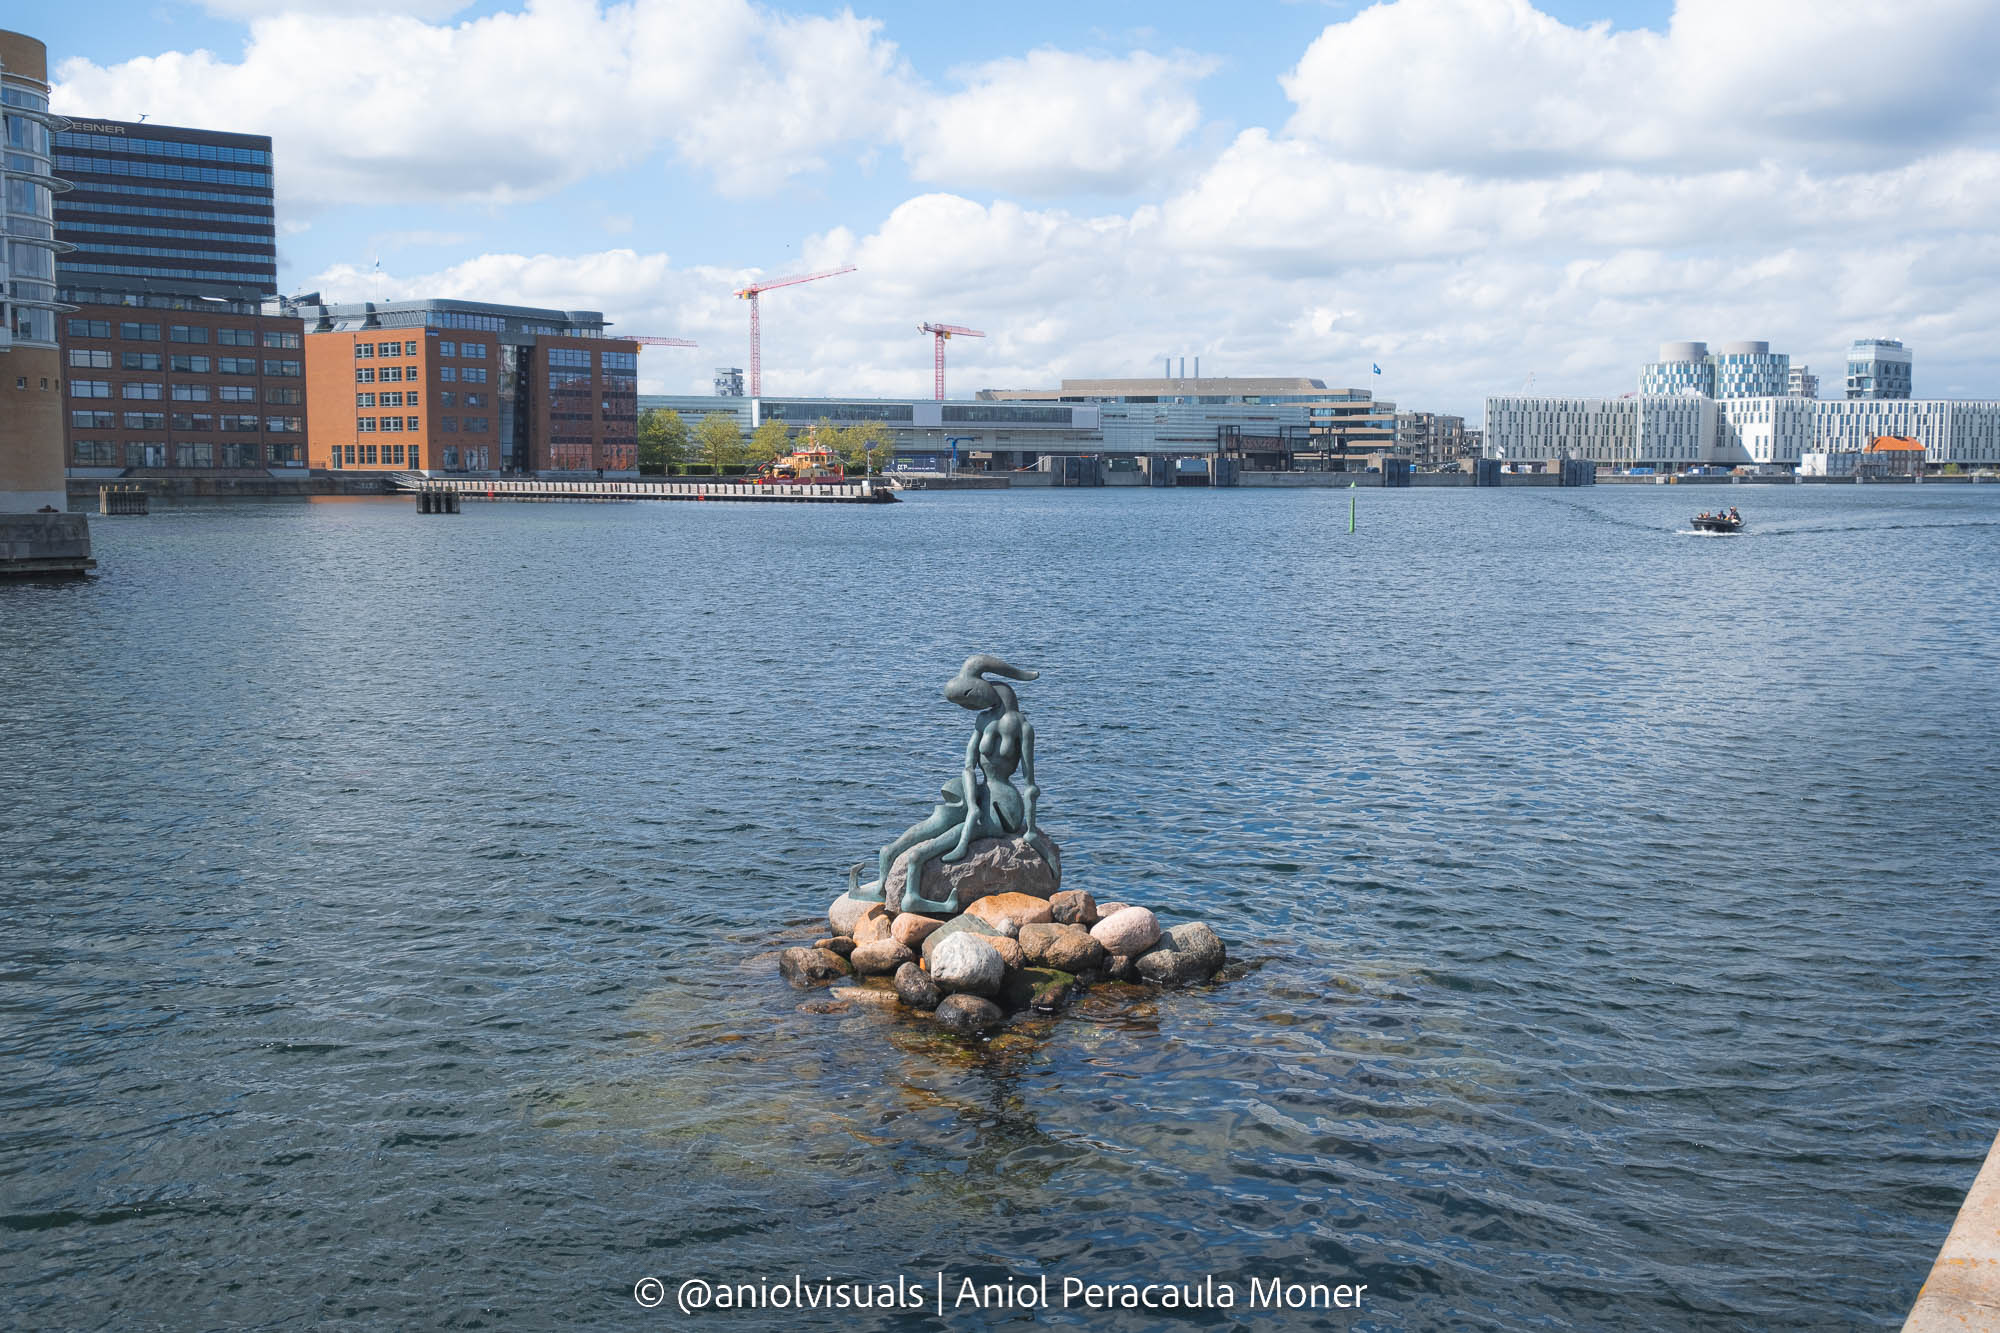 The genetically modified mermaid in Copenhagen